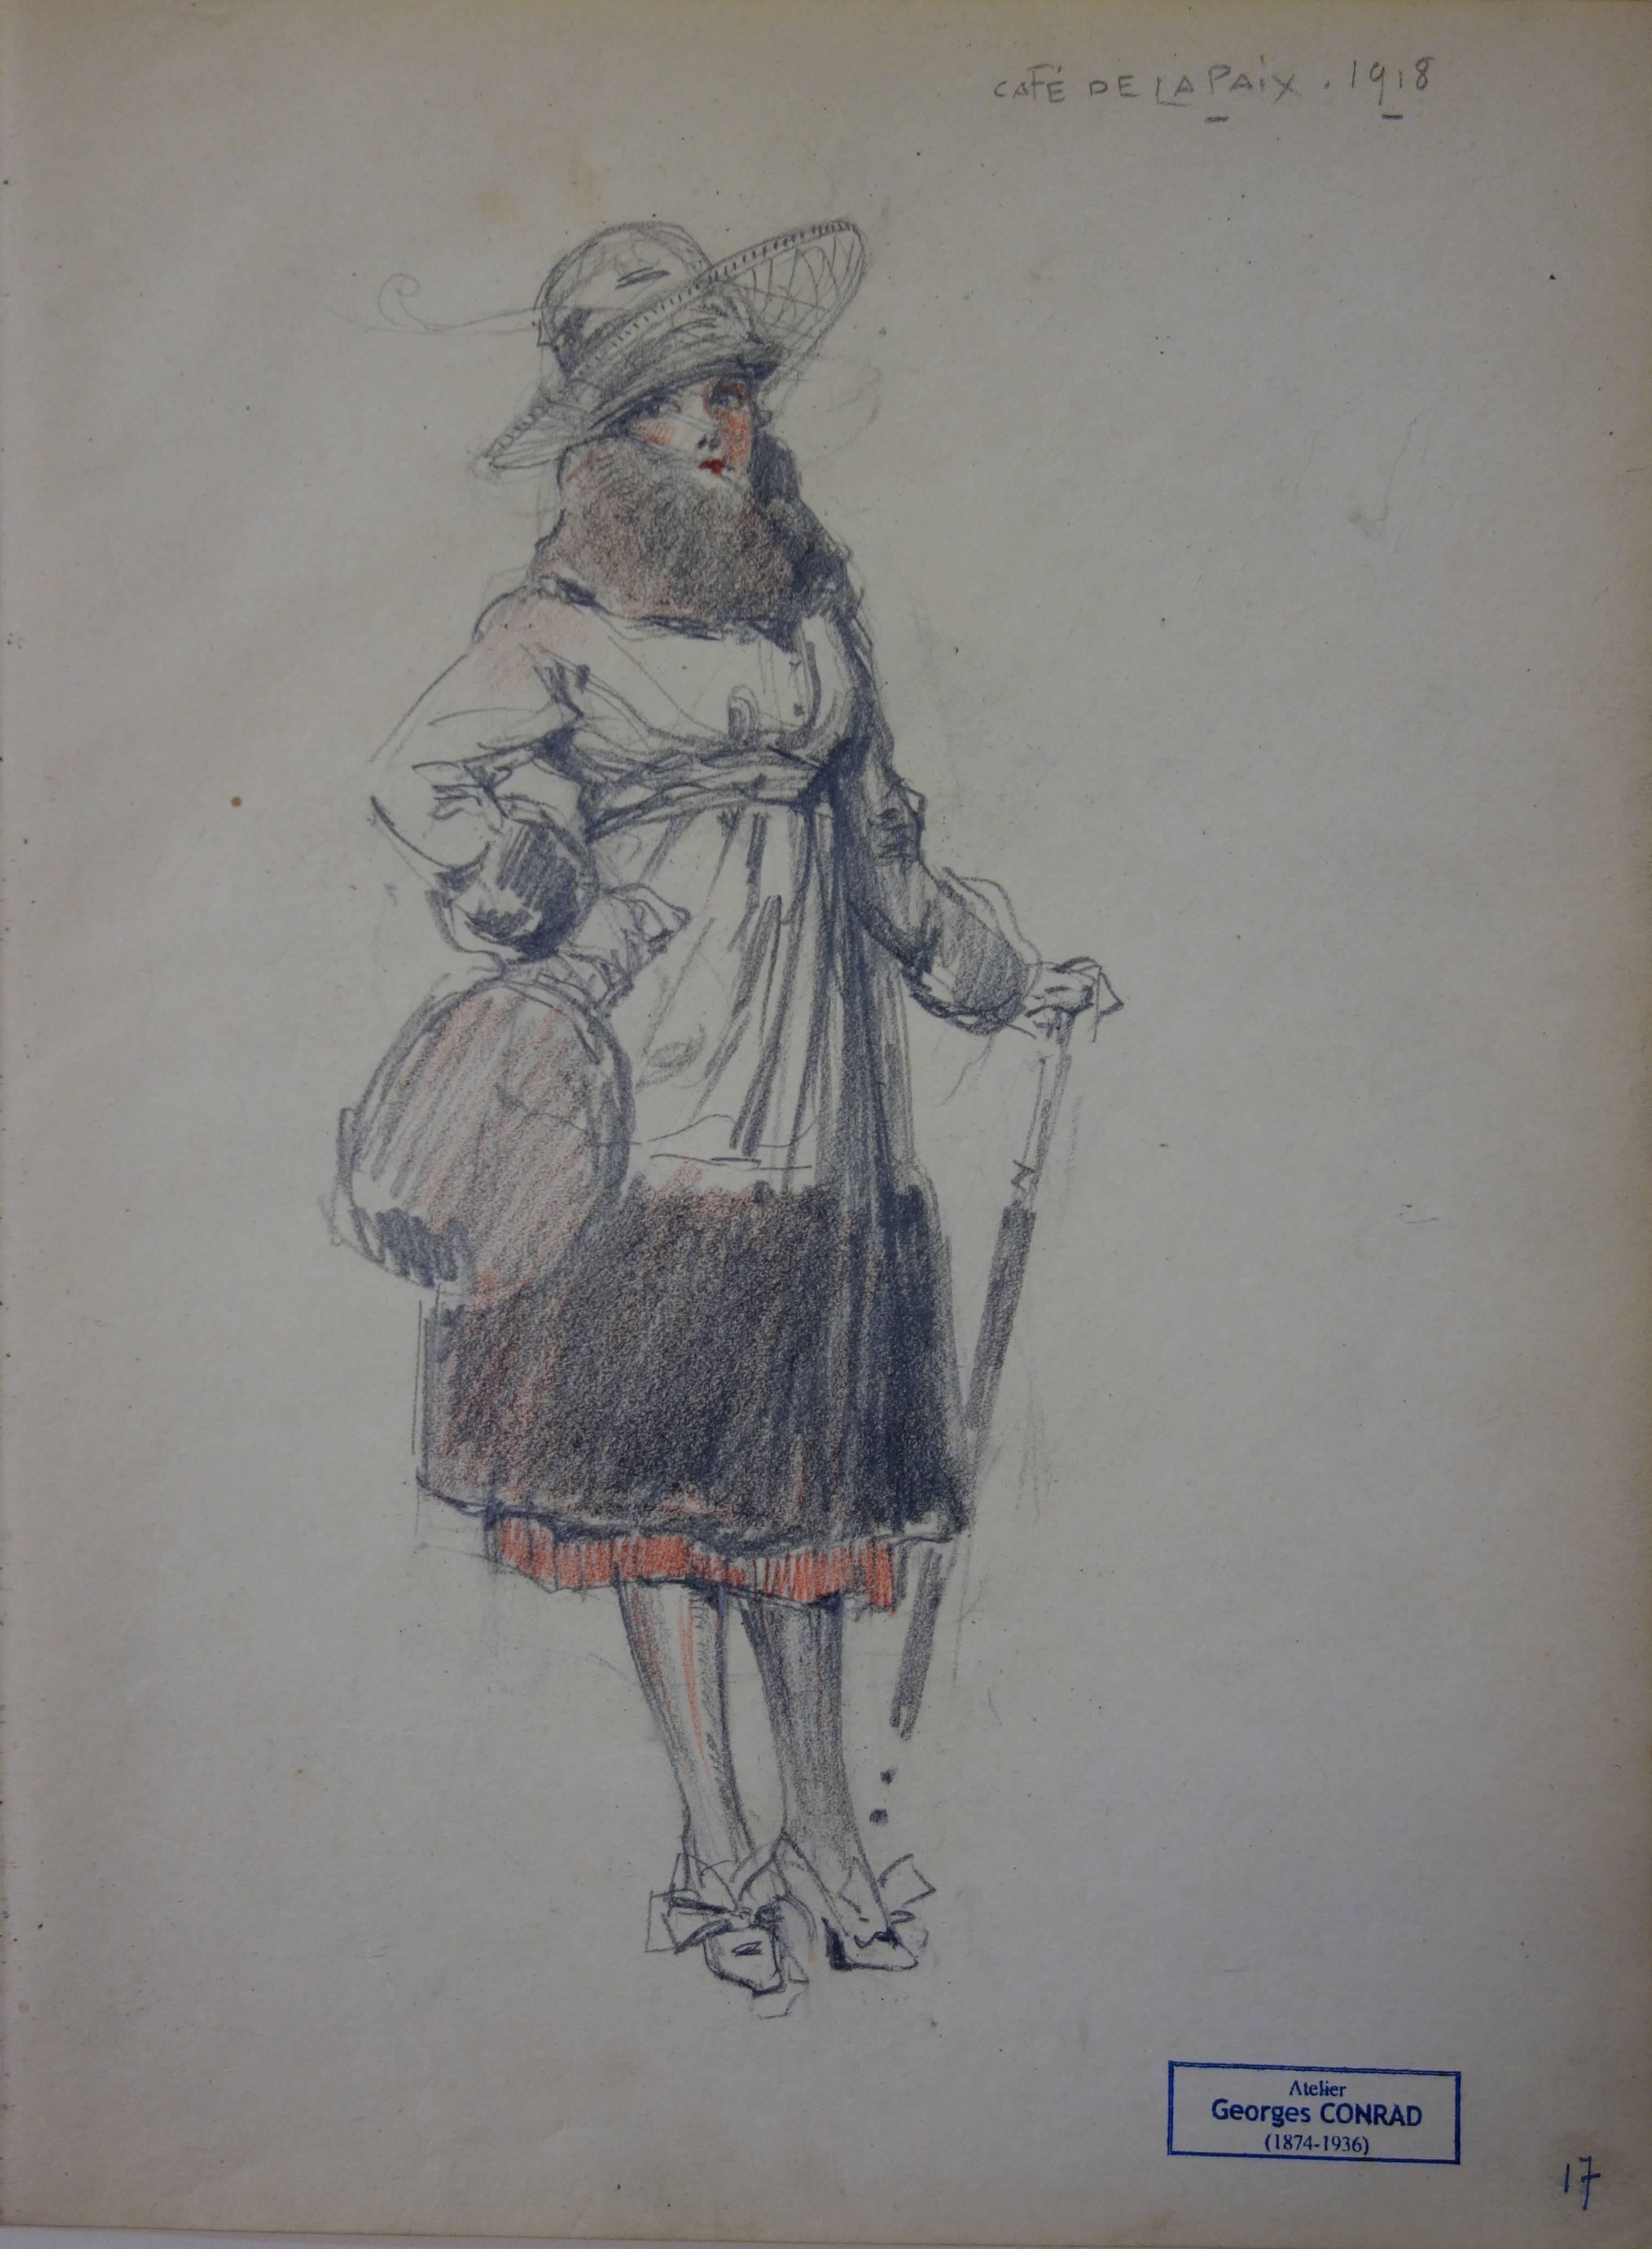 Elegant Woman Seen in Cafe de la Paix (Paris) - Pencil drawing - circa 1914